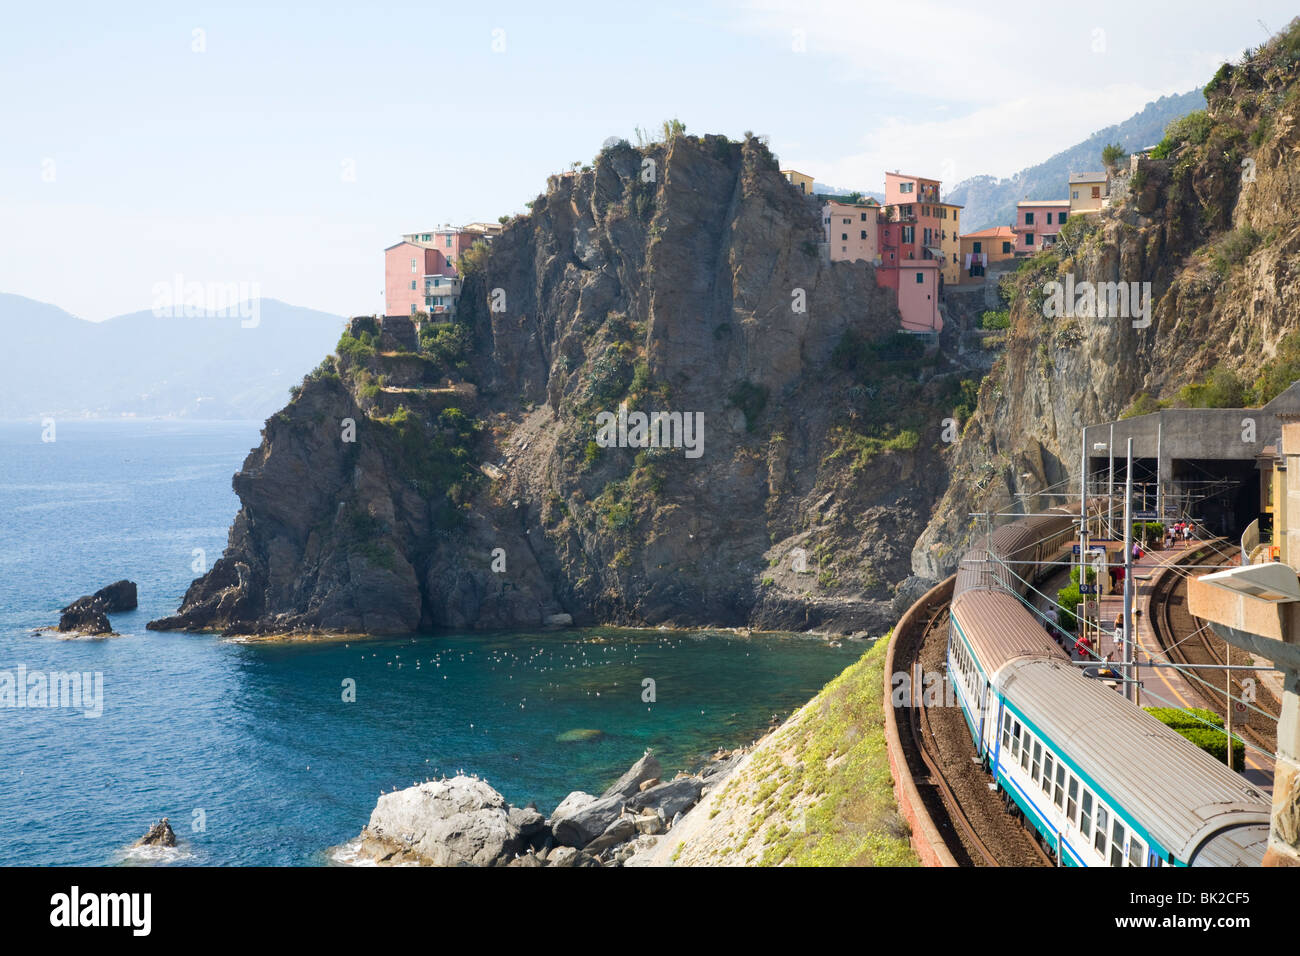 Via del amore in riomaggiore, Cinque Terre, Liguria, Italy Stock Photo